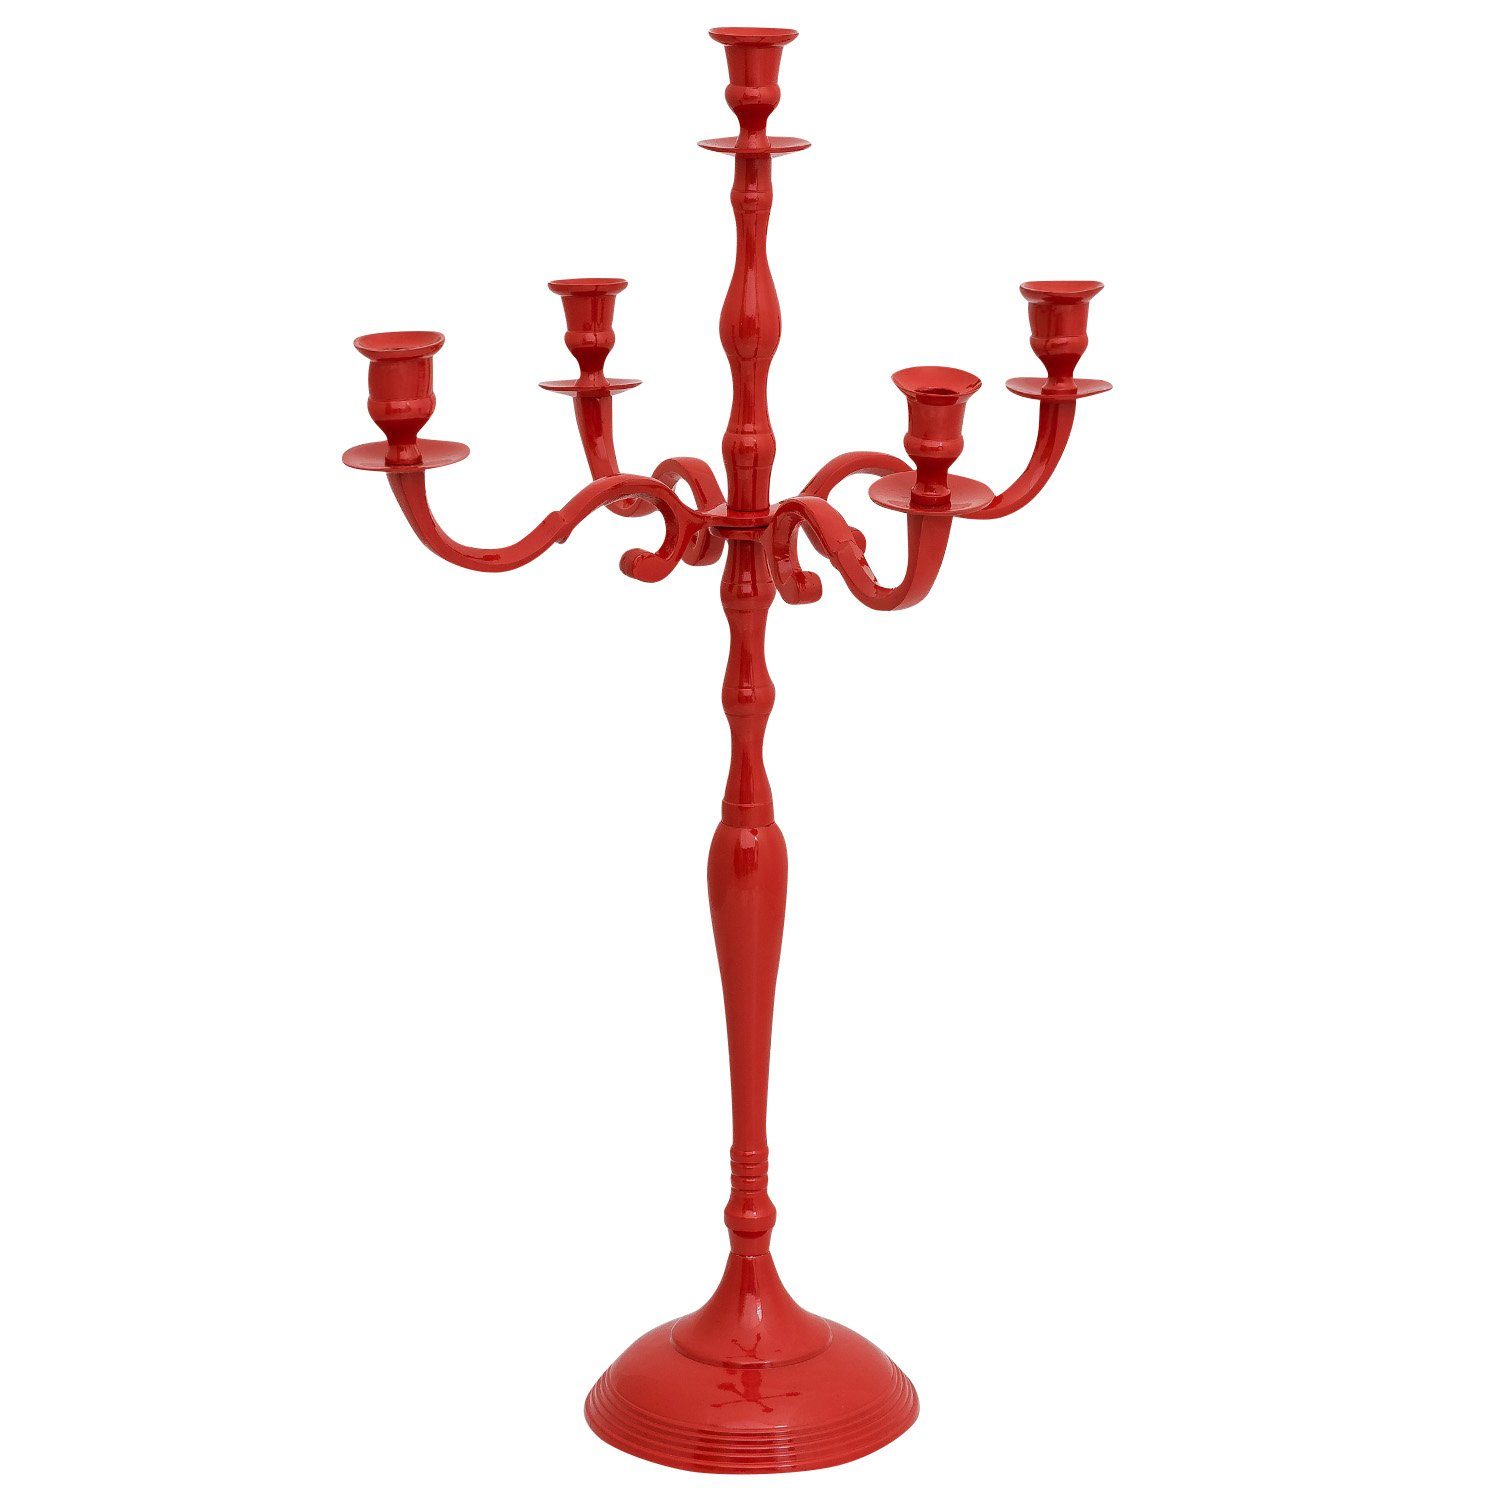 Aubaho Kerzenständer Kerzenhalter Kerzenständer 5-armig Aluminium rot Antik-Stil 78cm | Kerzenständer